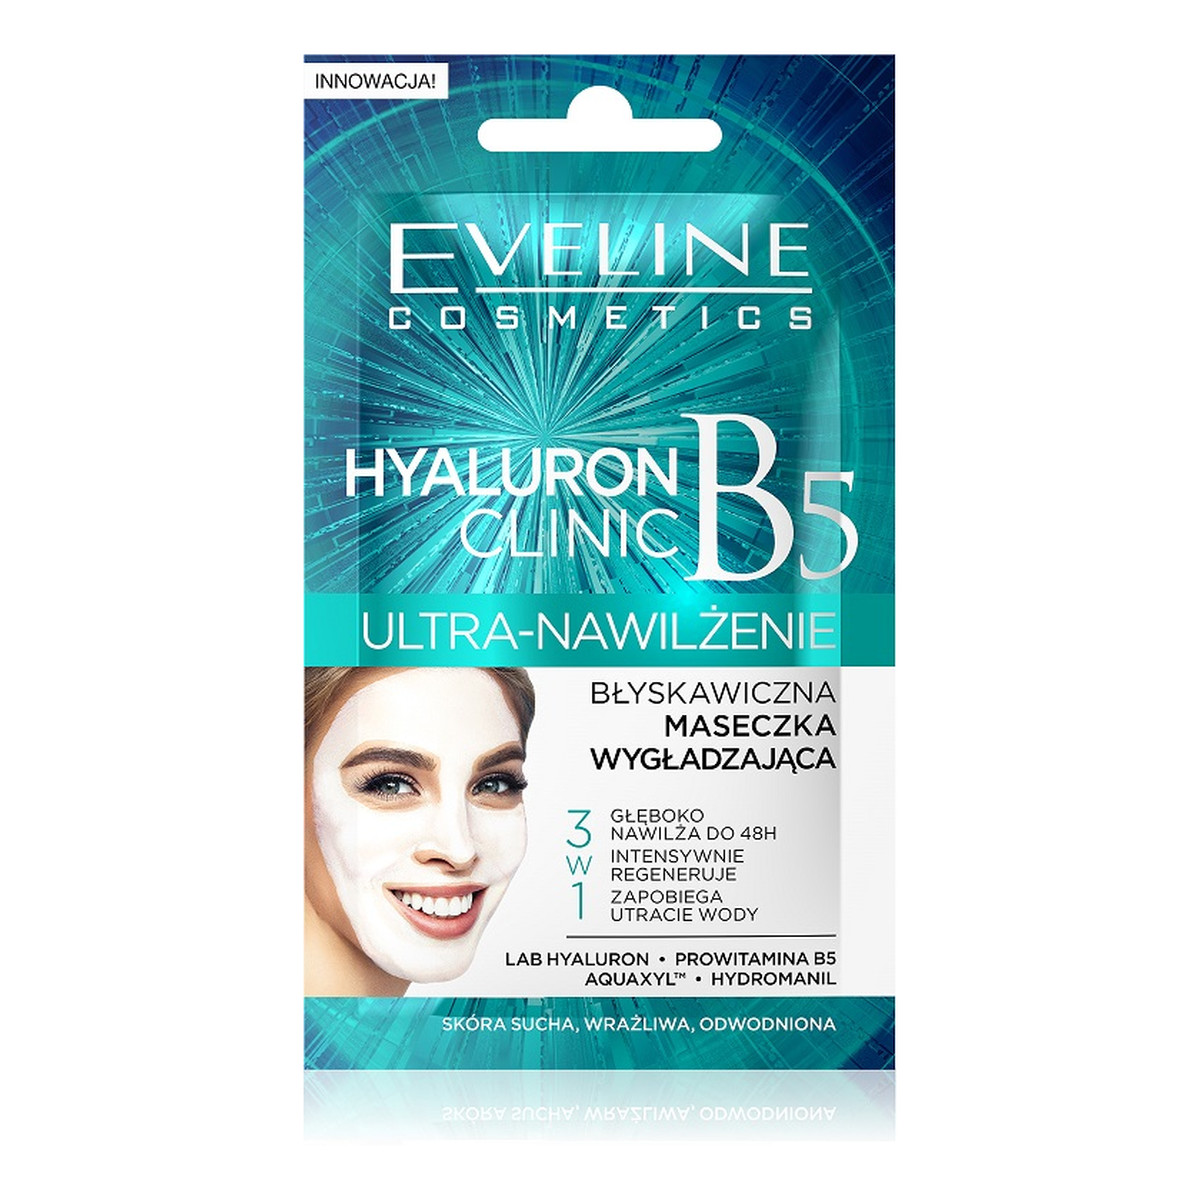 Eveline Hyaluron Clinic Ultra-Nawilżenie maseczka wygładzająca błyskawiczna - saszetka 7ml